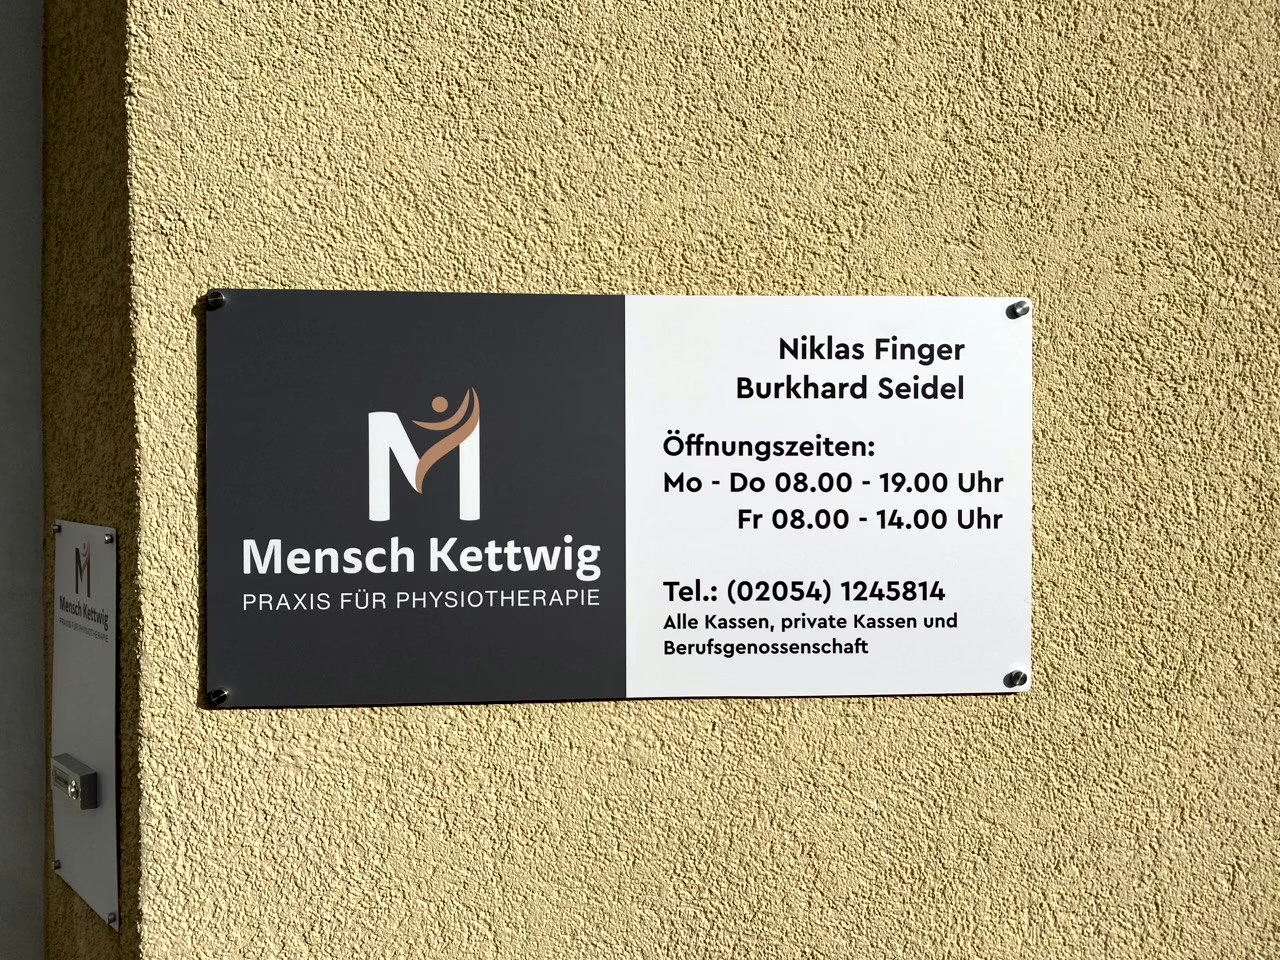 Mensch Kettwig - Praxis für Physiotherapie, Corneliusstraße 2 in Essen